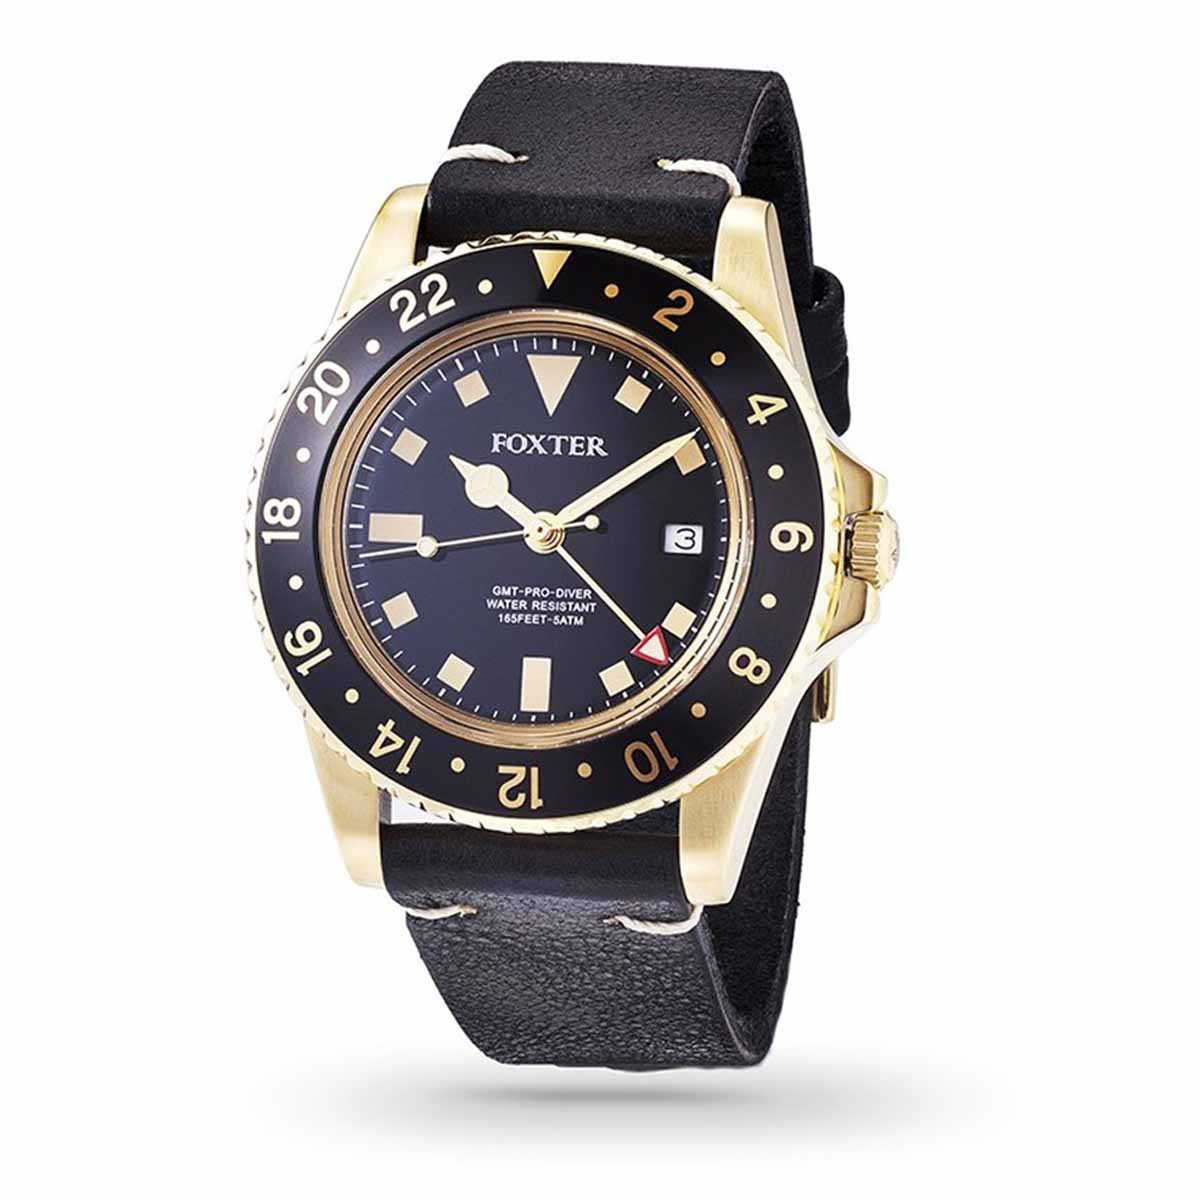 Montre Homme Foxter Sixties bracelet cuir noir, boitier PVD doré et fond noir - SIXTIES1